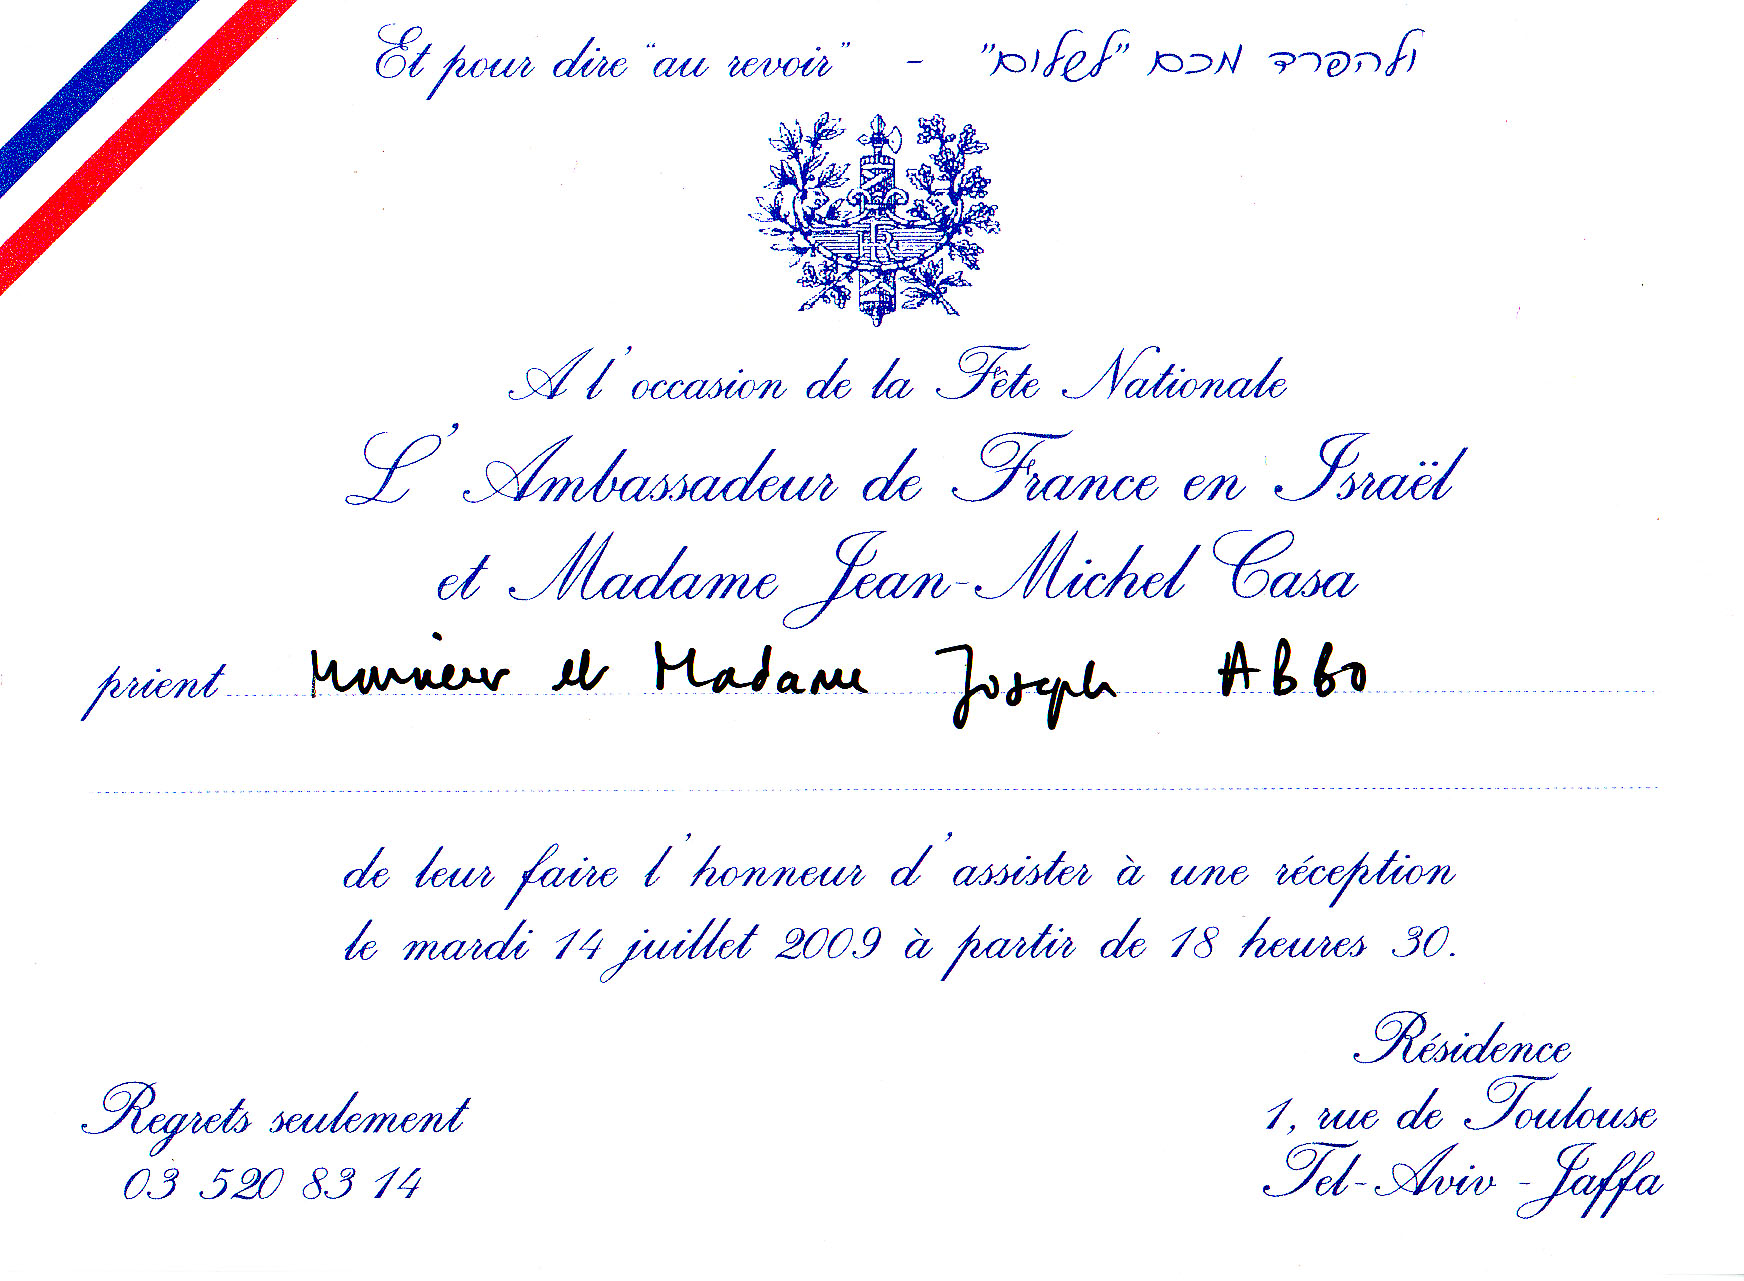 ההזמנה משגרירות צרפת